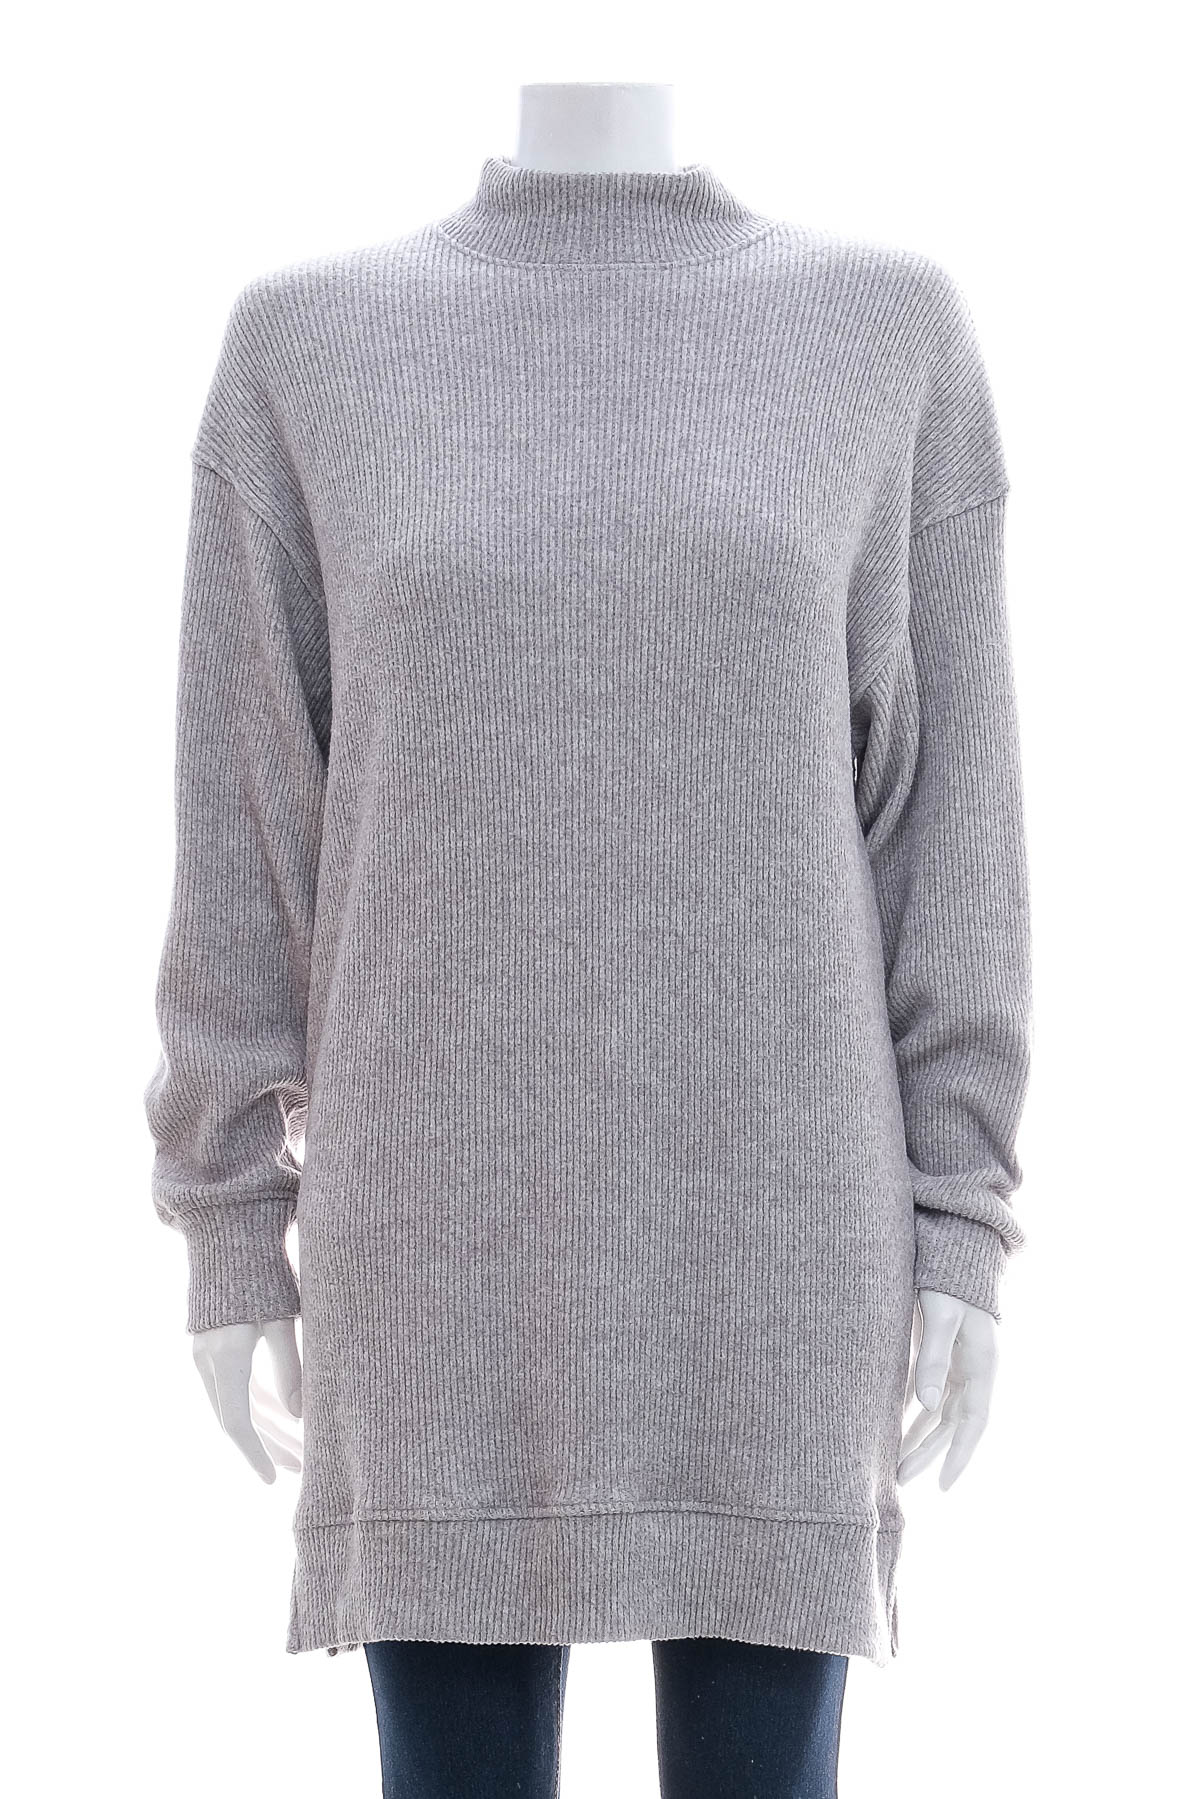 Women's sweater - Bershka - 0